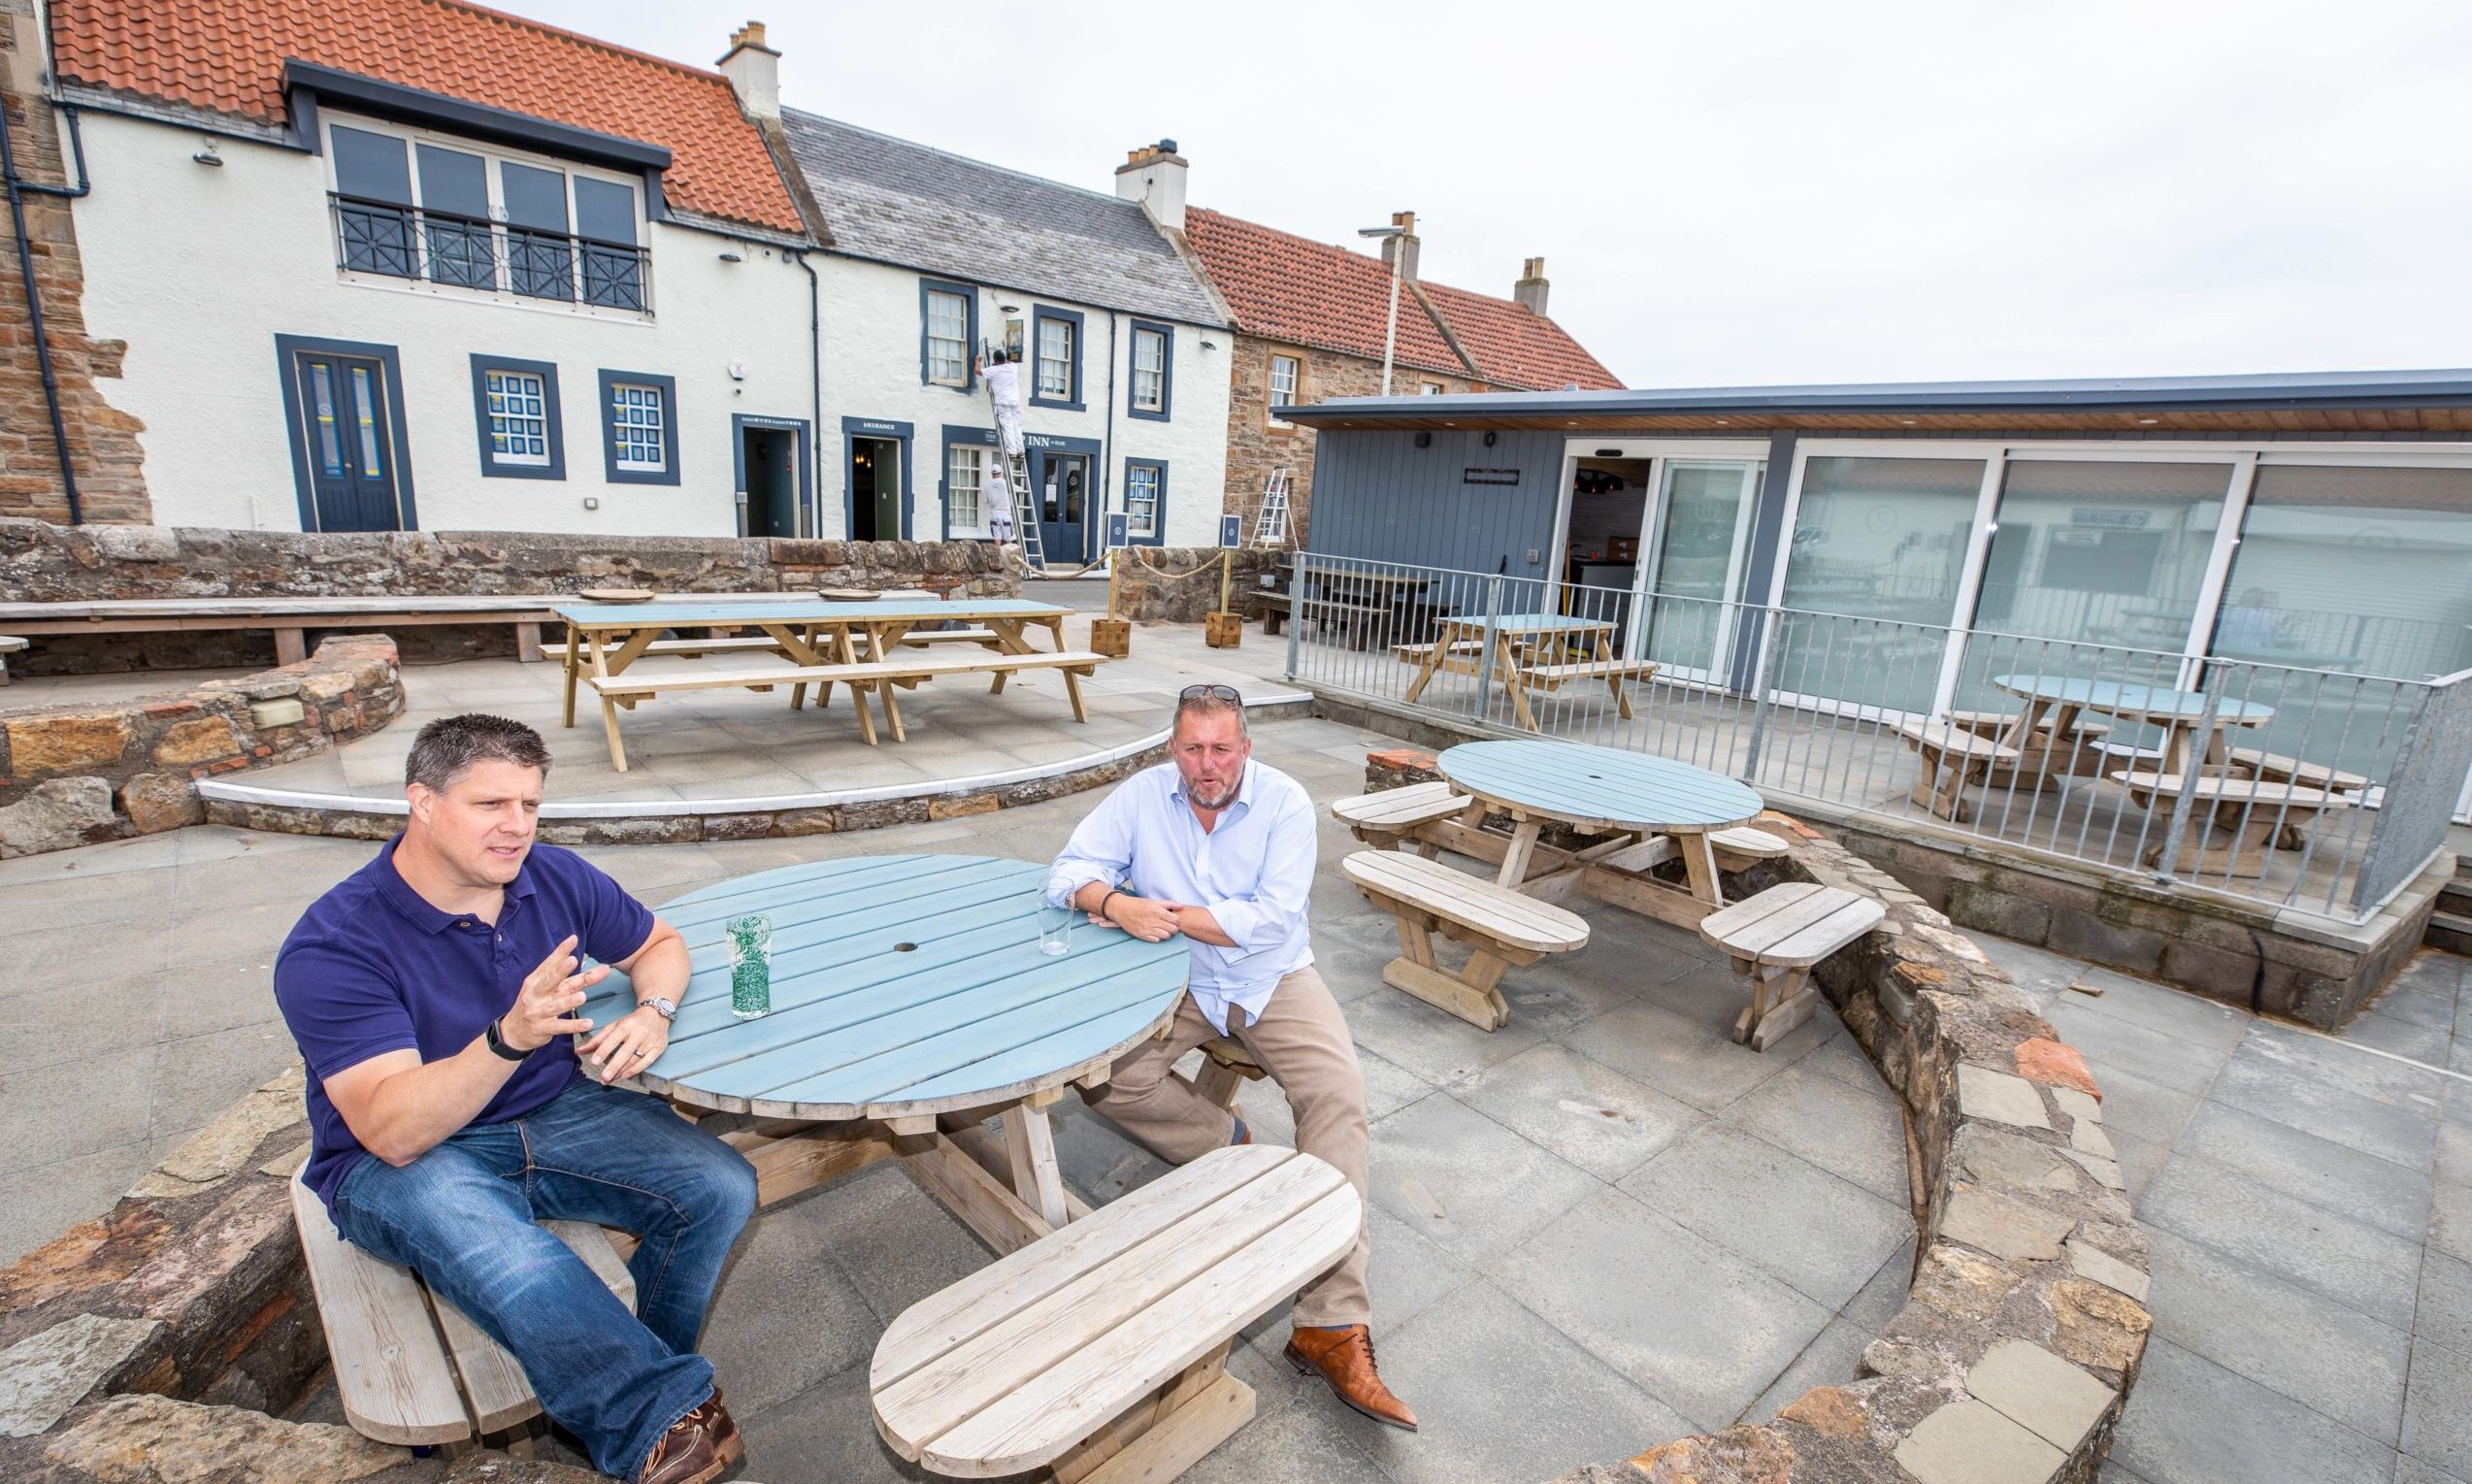 Manager Ross Myddleton and owner Graham Bucknall in the beer garden of The Ship Inn, Elie.